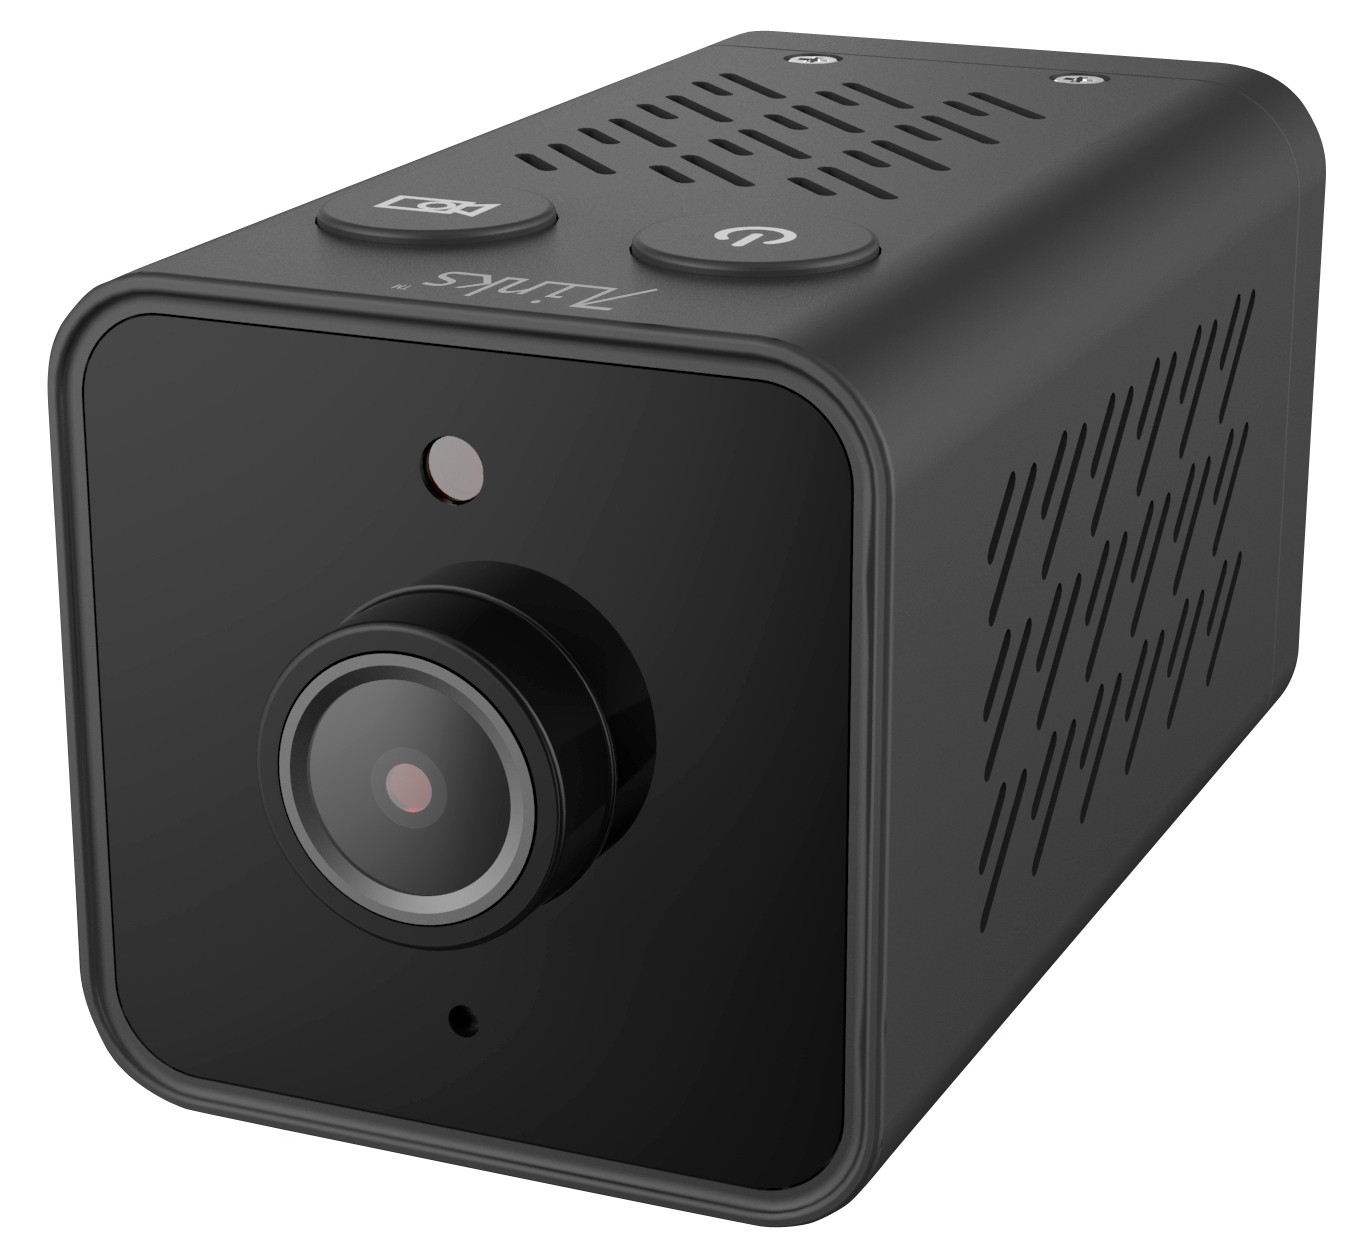 Produktvorstellung Mini-Überwachungskamera von 7links mit integriertem Akku - WLAN und App - News, Bild 1